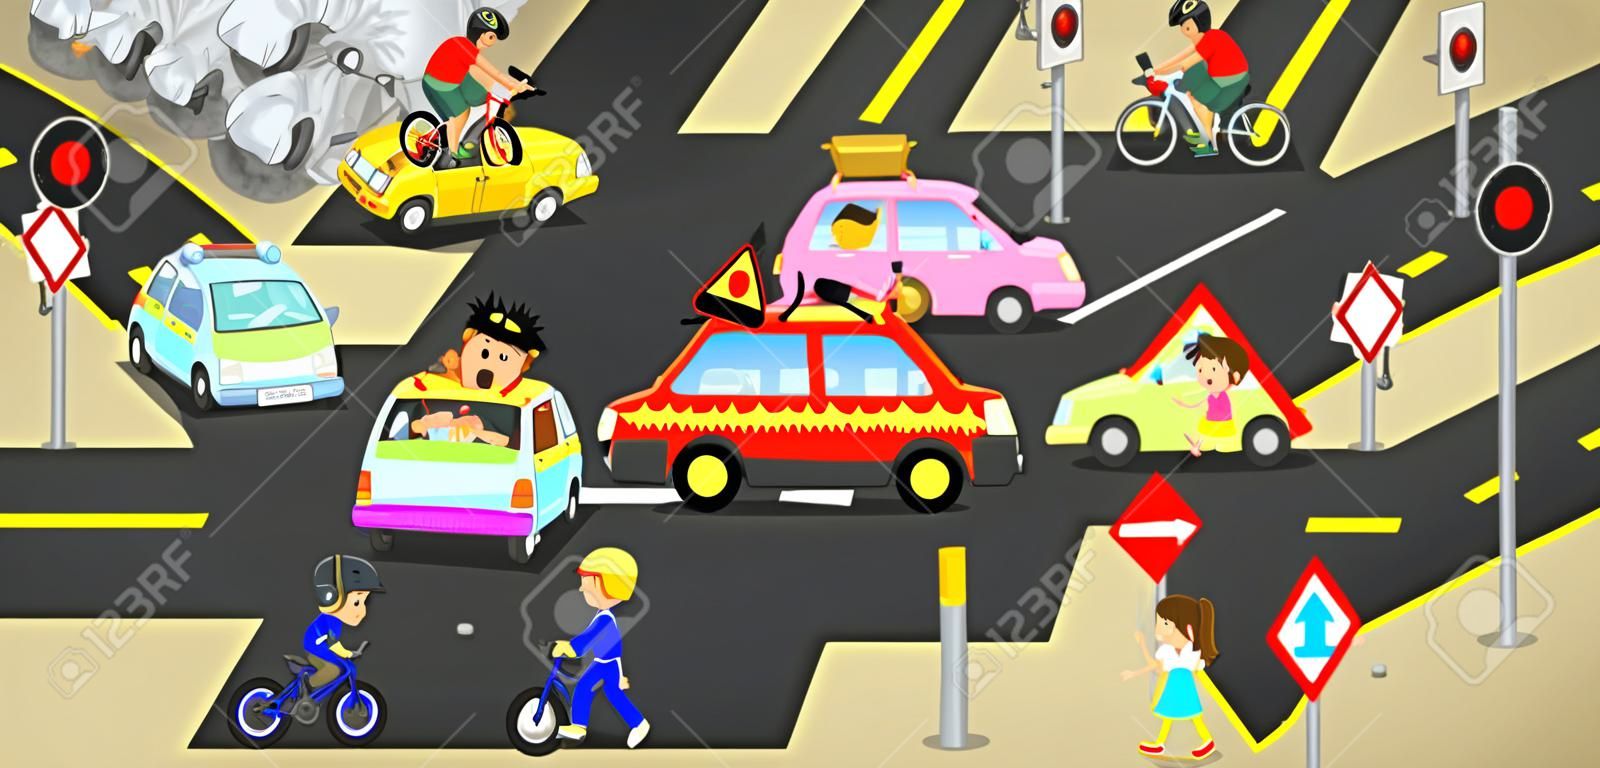 Kazalar, yaralanmalar, trafik yol araçlarda tehlike ve emniyet uyarı vektörü ile oluşturmak, araba bisiklet ve çocuklar için sevimli komik karikatür kavramı işareti ve sembolü ile kentsel sokakta dikkatsiz insanlar tarafından neden